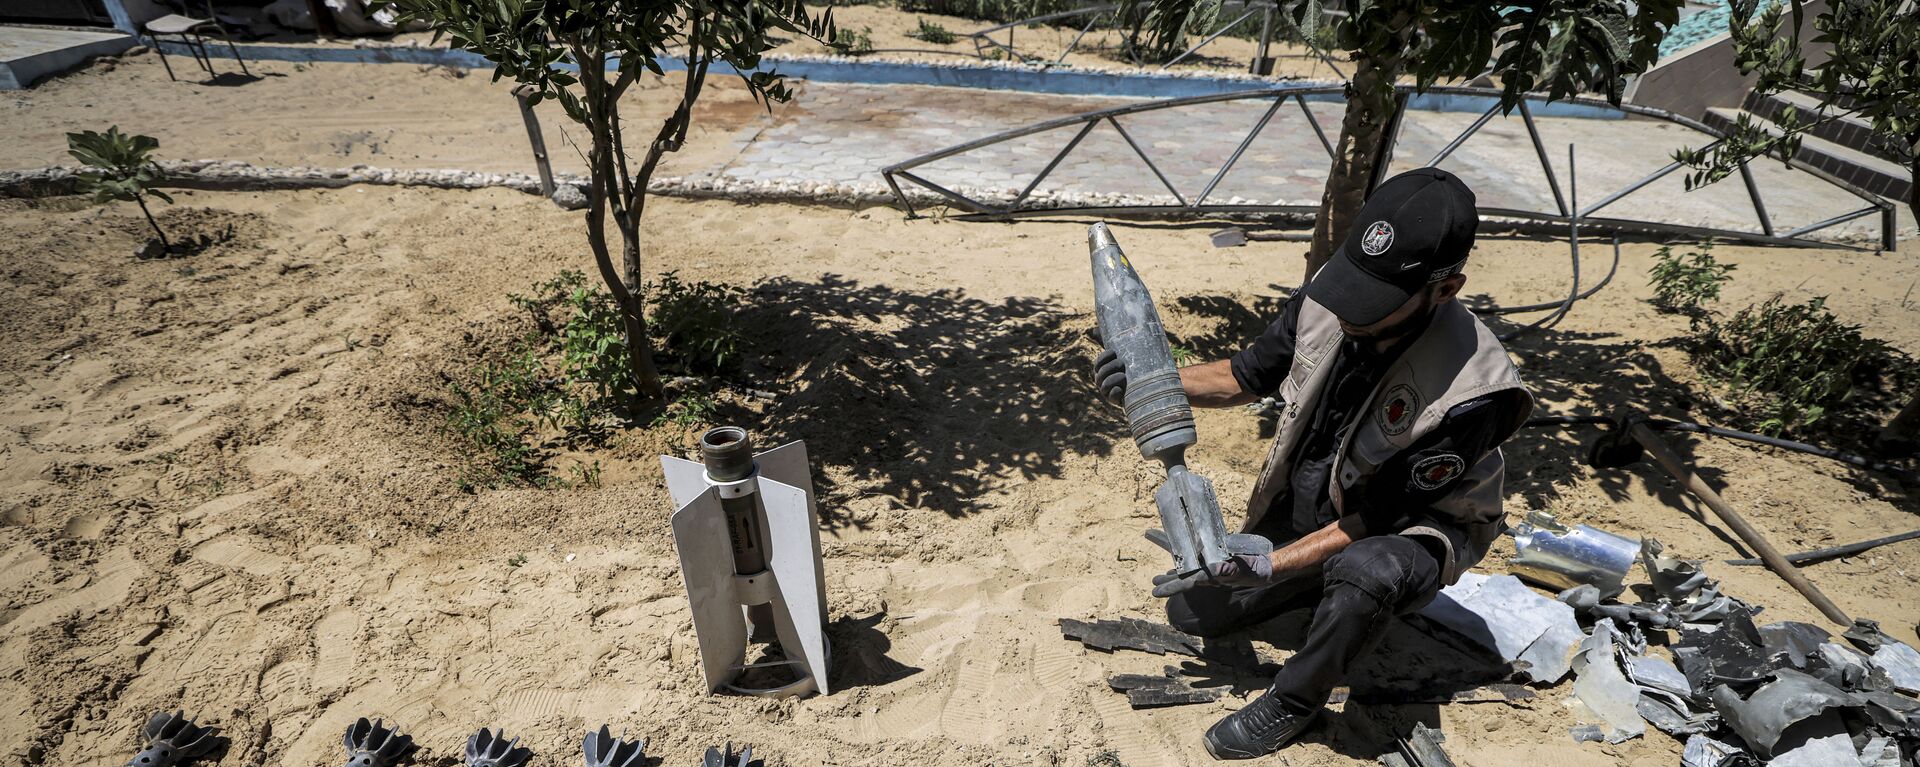 خبراء المتفجرات من حماس يقومون بإزالة قنابل وصواريخ قوات الطيران الحربي التي لم تنفجر في خان يونس، بعد تبادل إطلاق النار بين قطاع غزة وإسرائيل في مايو الماضي، 5 يونيو 2021 - سبوتنيك عربي, 1920, 13.10.2023